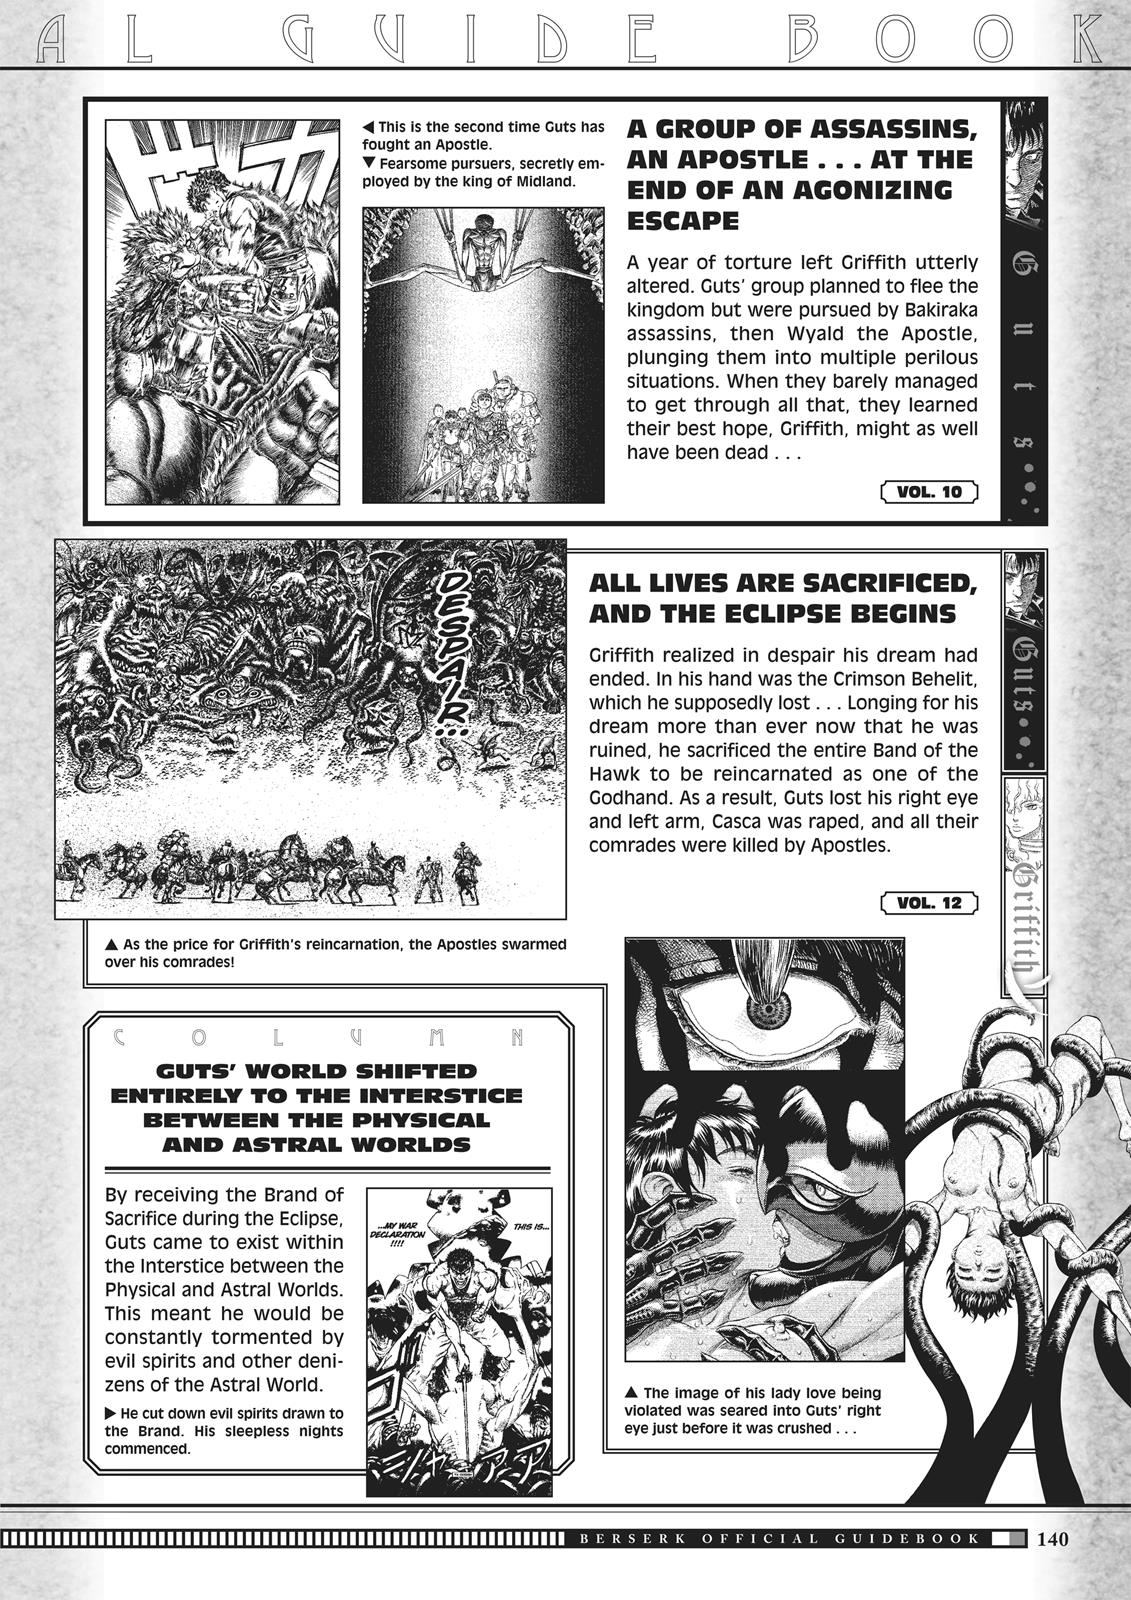 Berserk Manga Chapter 350.5 image 138